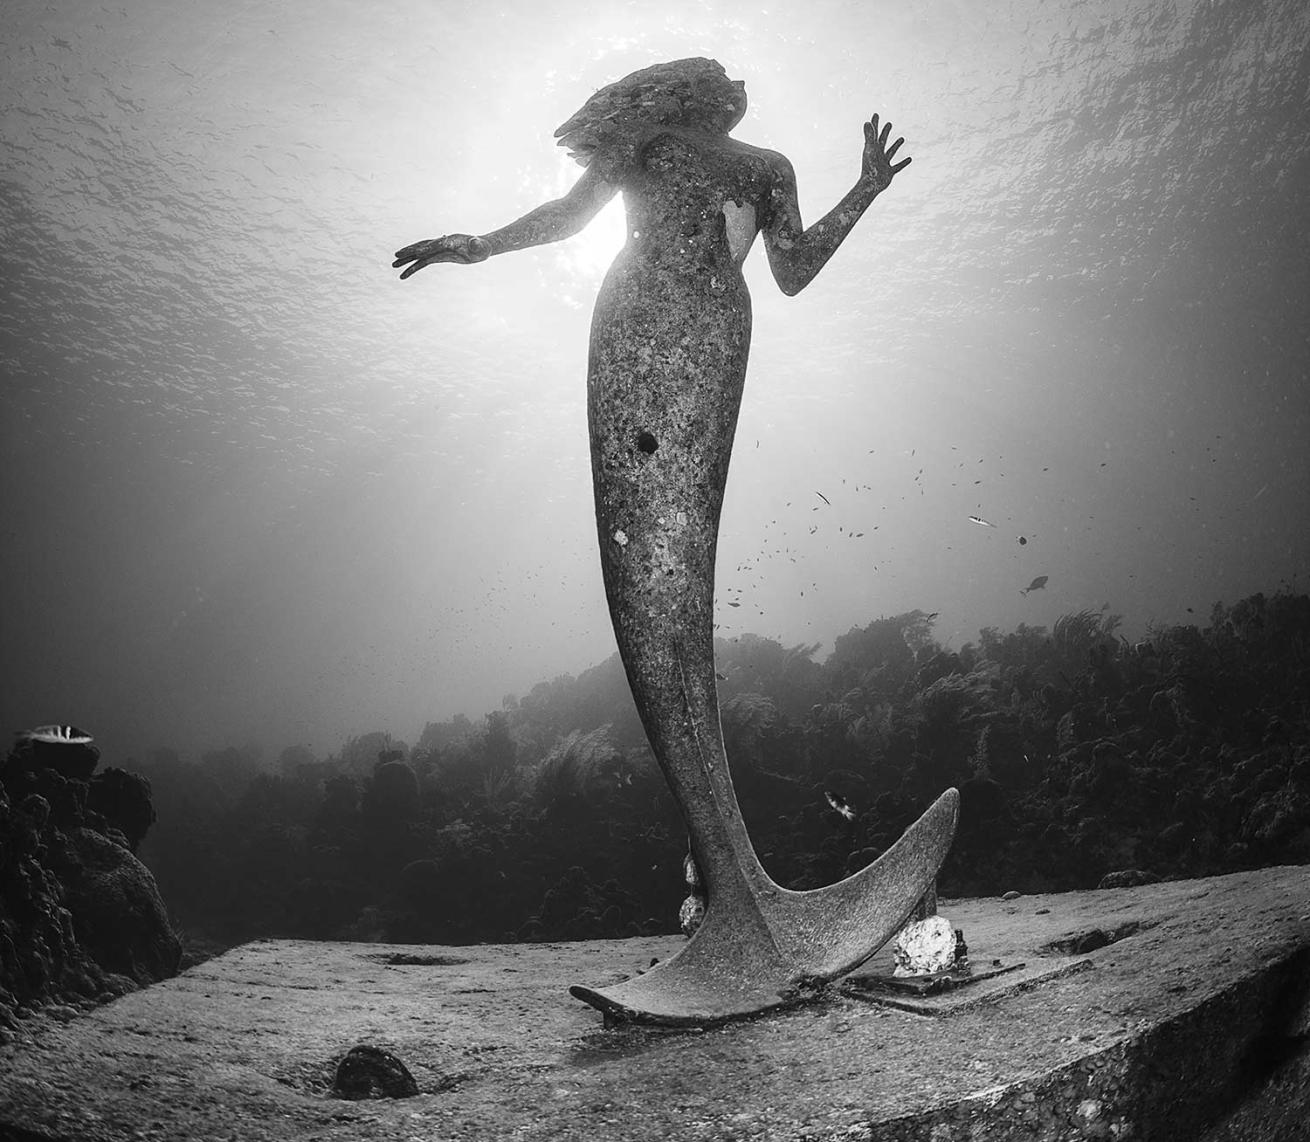 The Amphirite statue off Grand Cayman